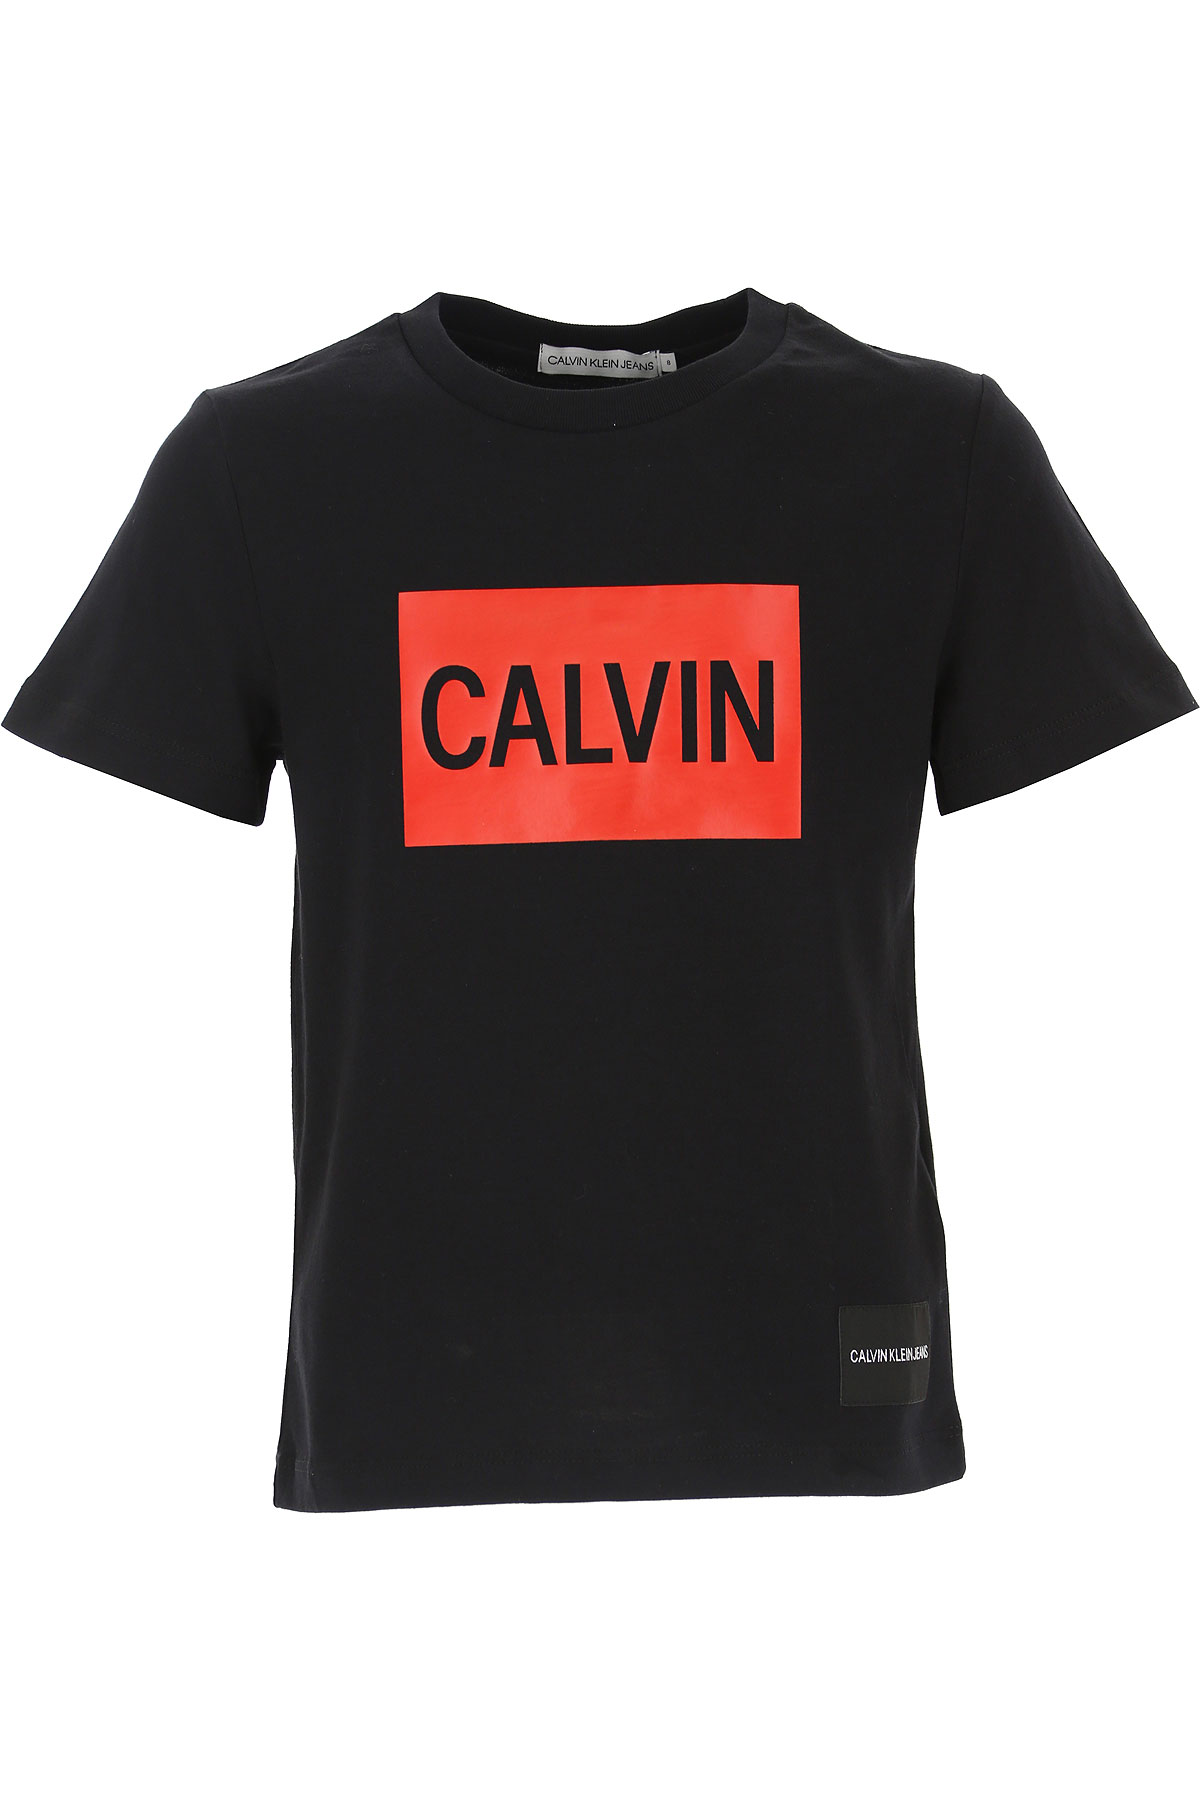 Calvin Klein Kinder T-Shirt für Jungen Günstig im Sale, Schwarz, Baumwolle, 2017, 4Y 8Y